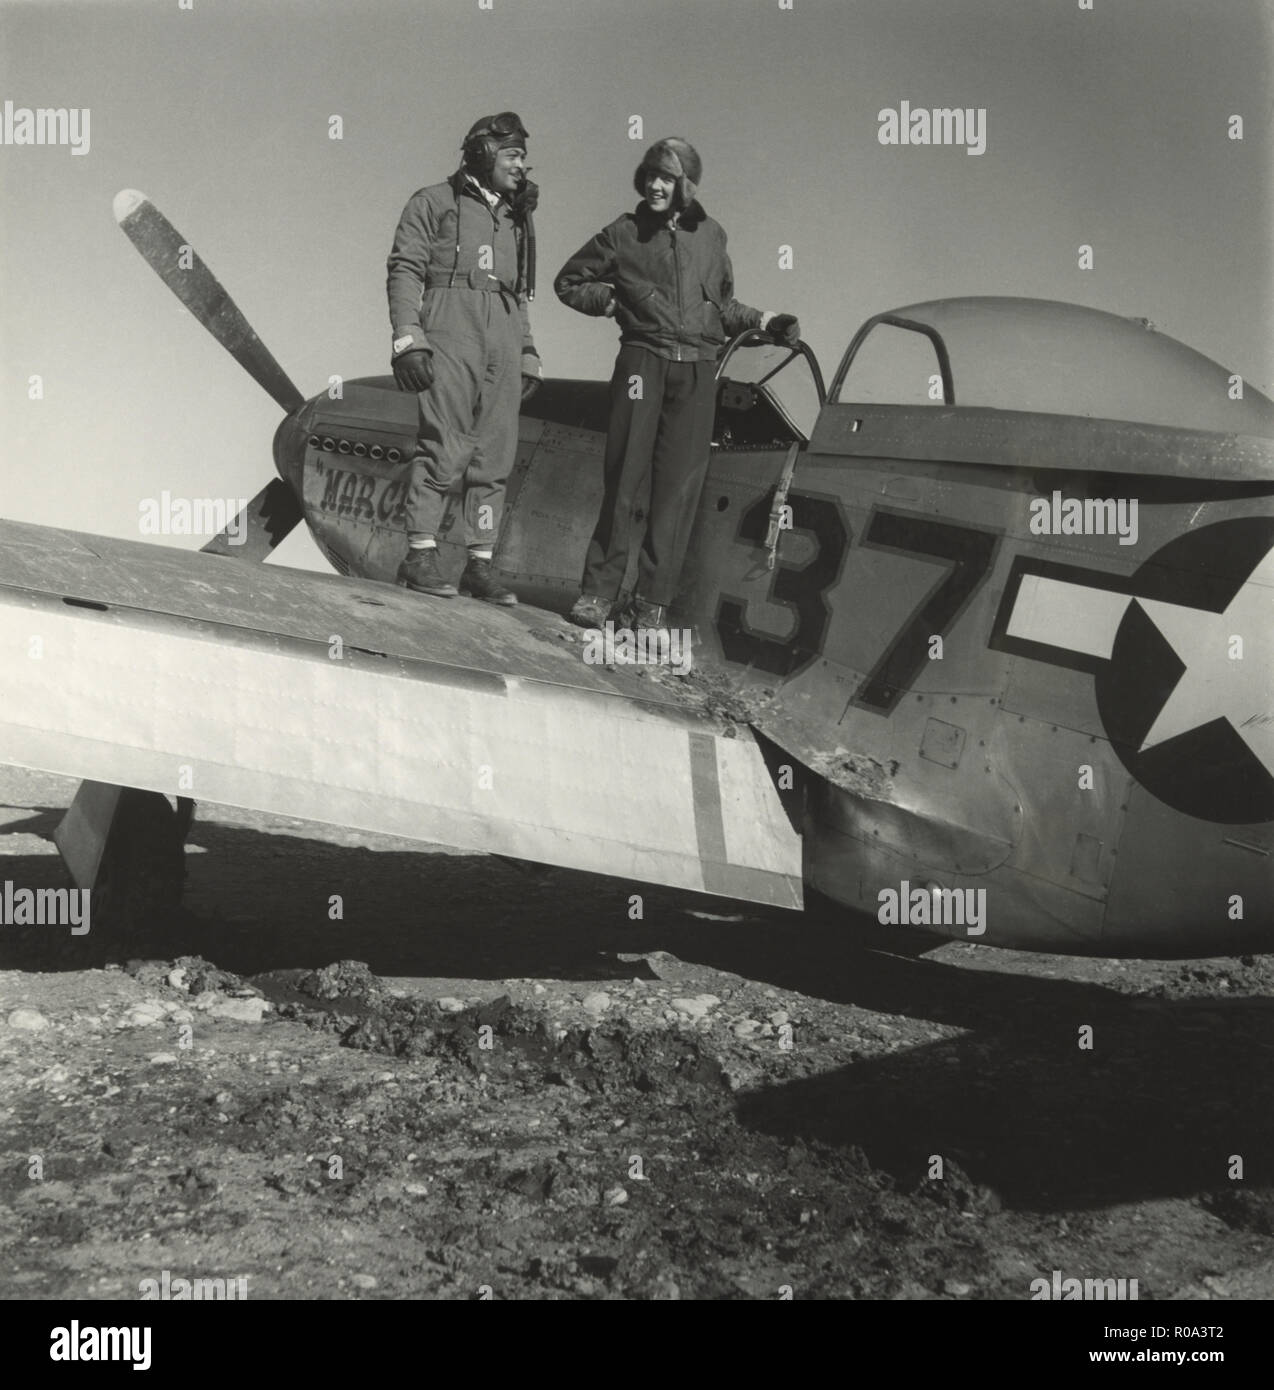 Commandant de groupe adjoint George S. Roberts avec le photographe Toni Frissell, Portrait debout sur aile d'avion à Air Base, Ramitelli, Italie, Toni Frissell, Mars 1945 Banque D'Images